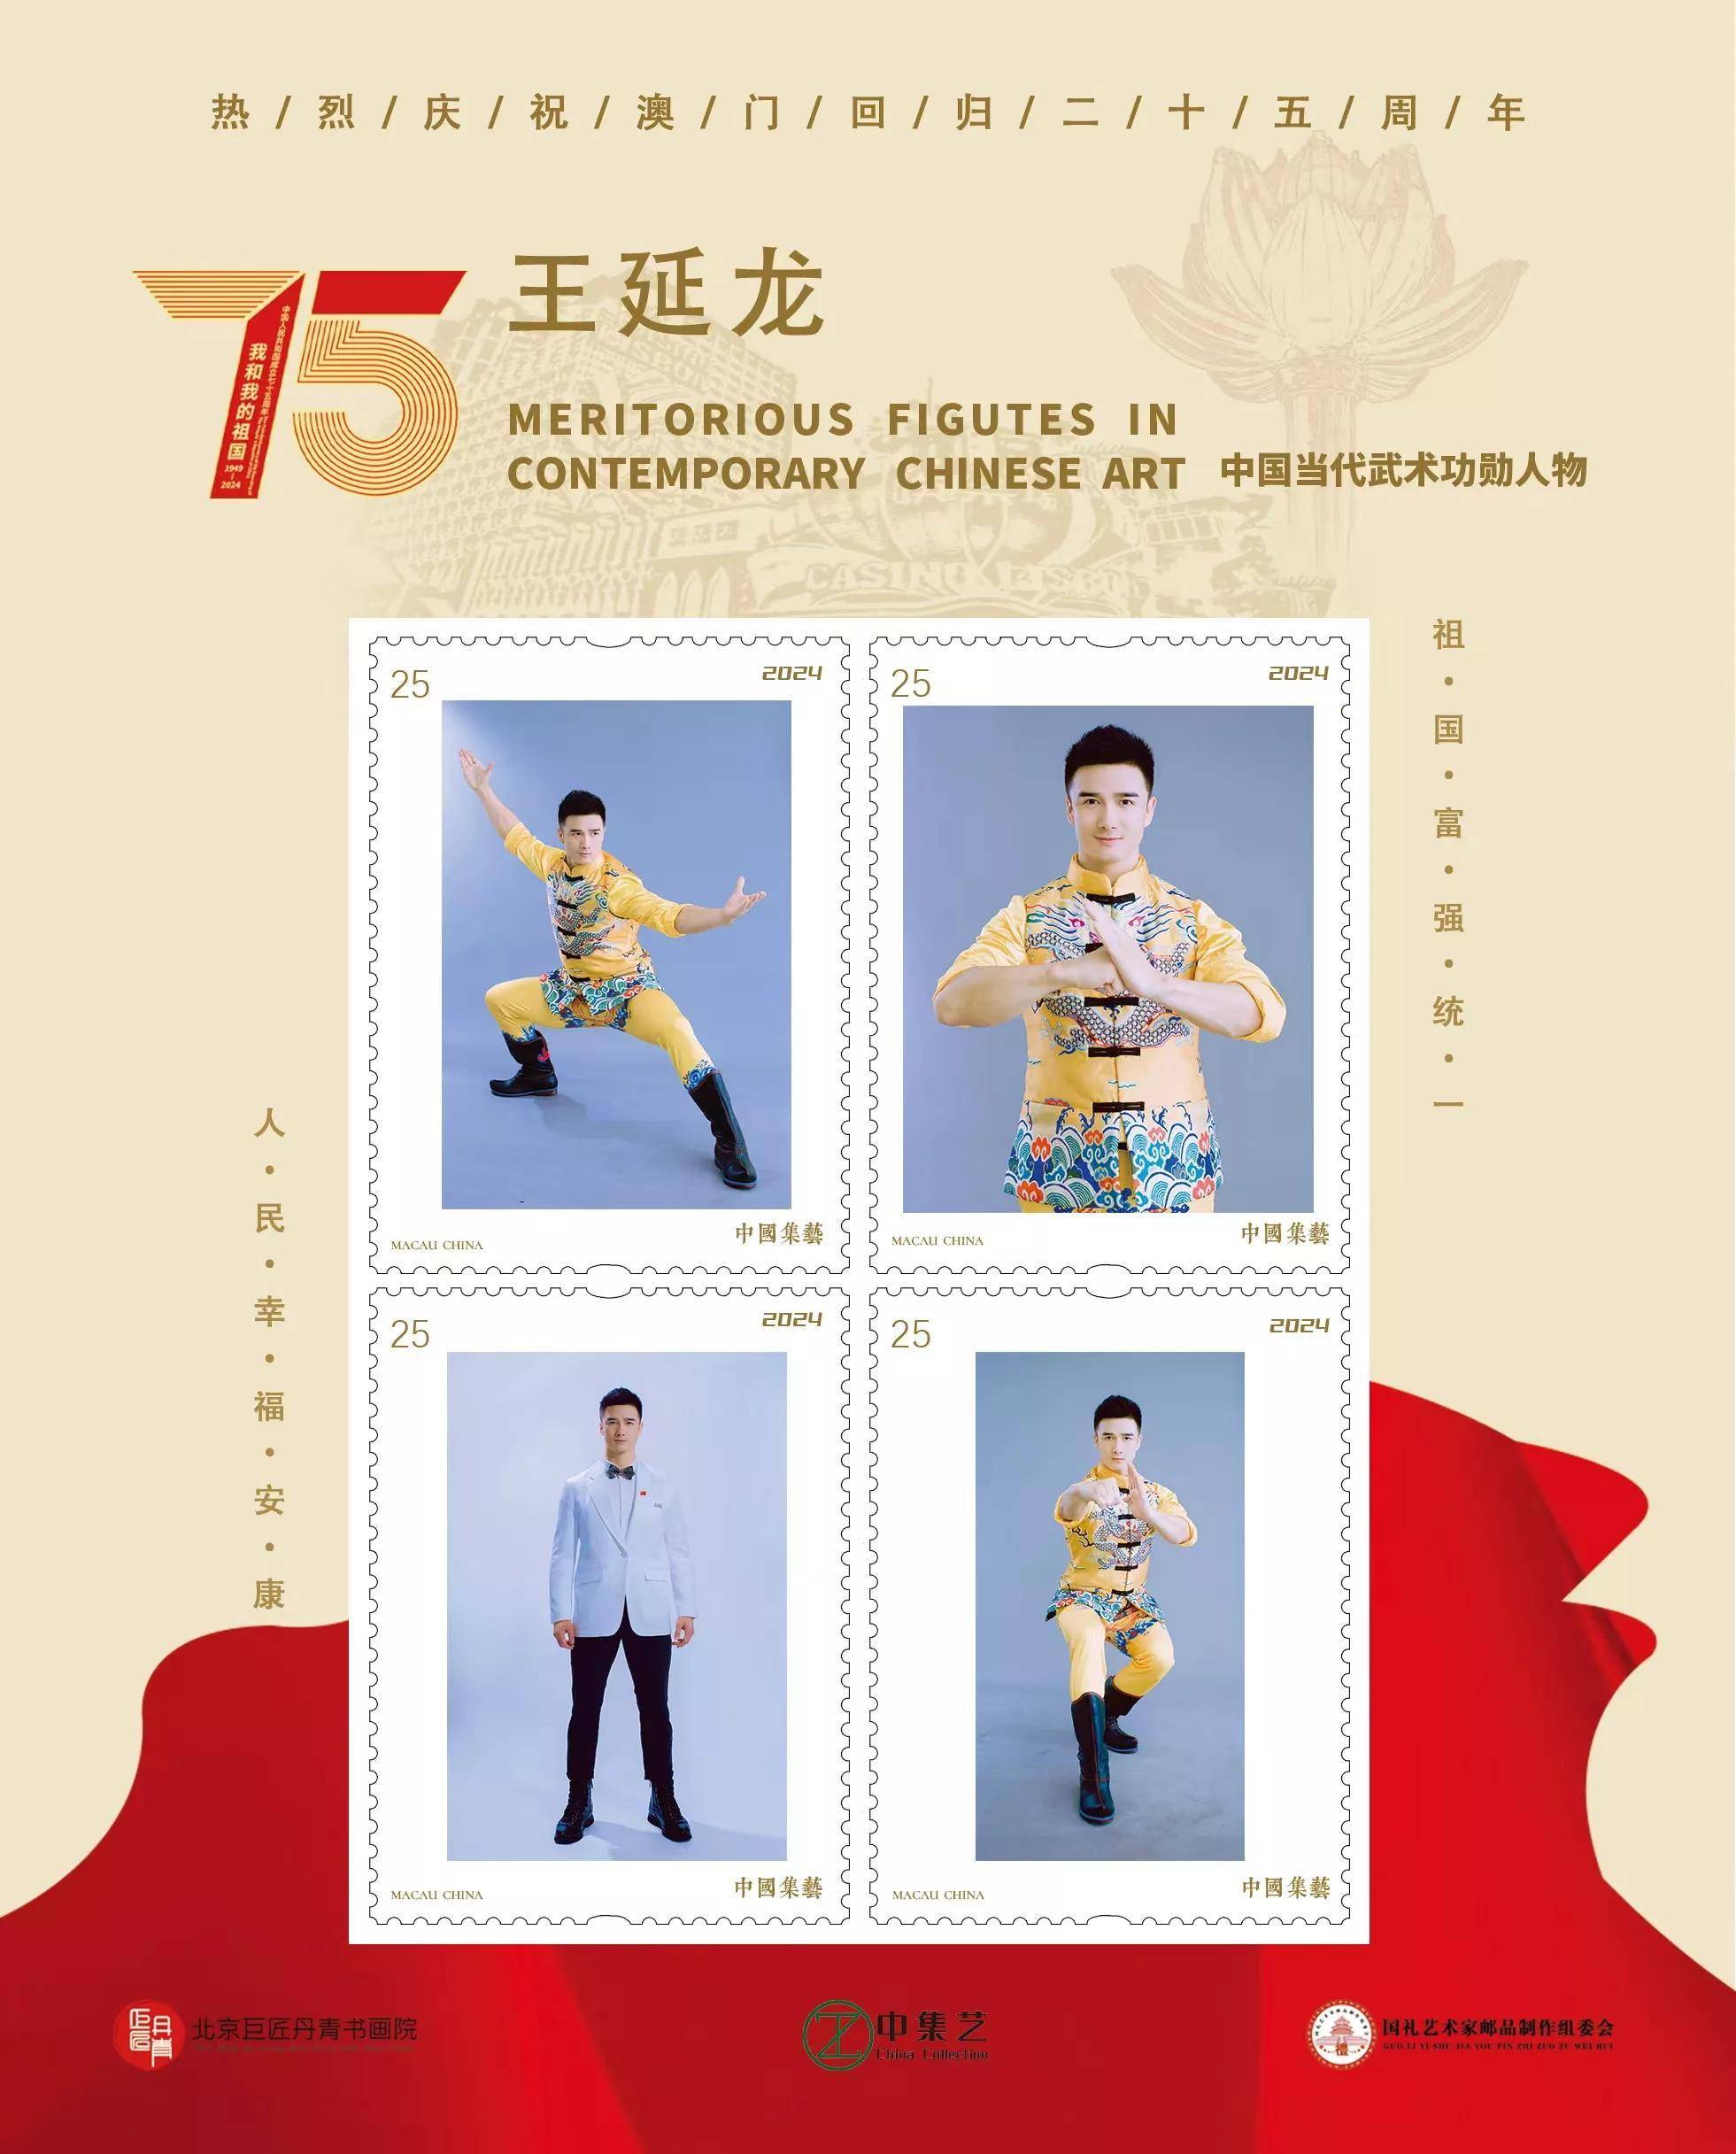 武术冠军王延龙上榜建国75周年邮票人物:让中国武术更加耀眼夺目